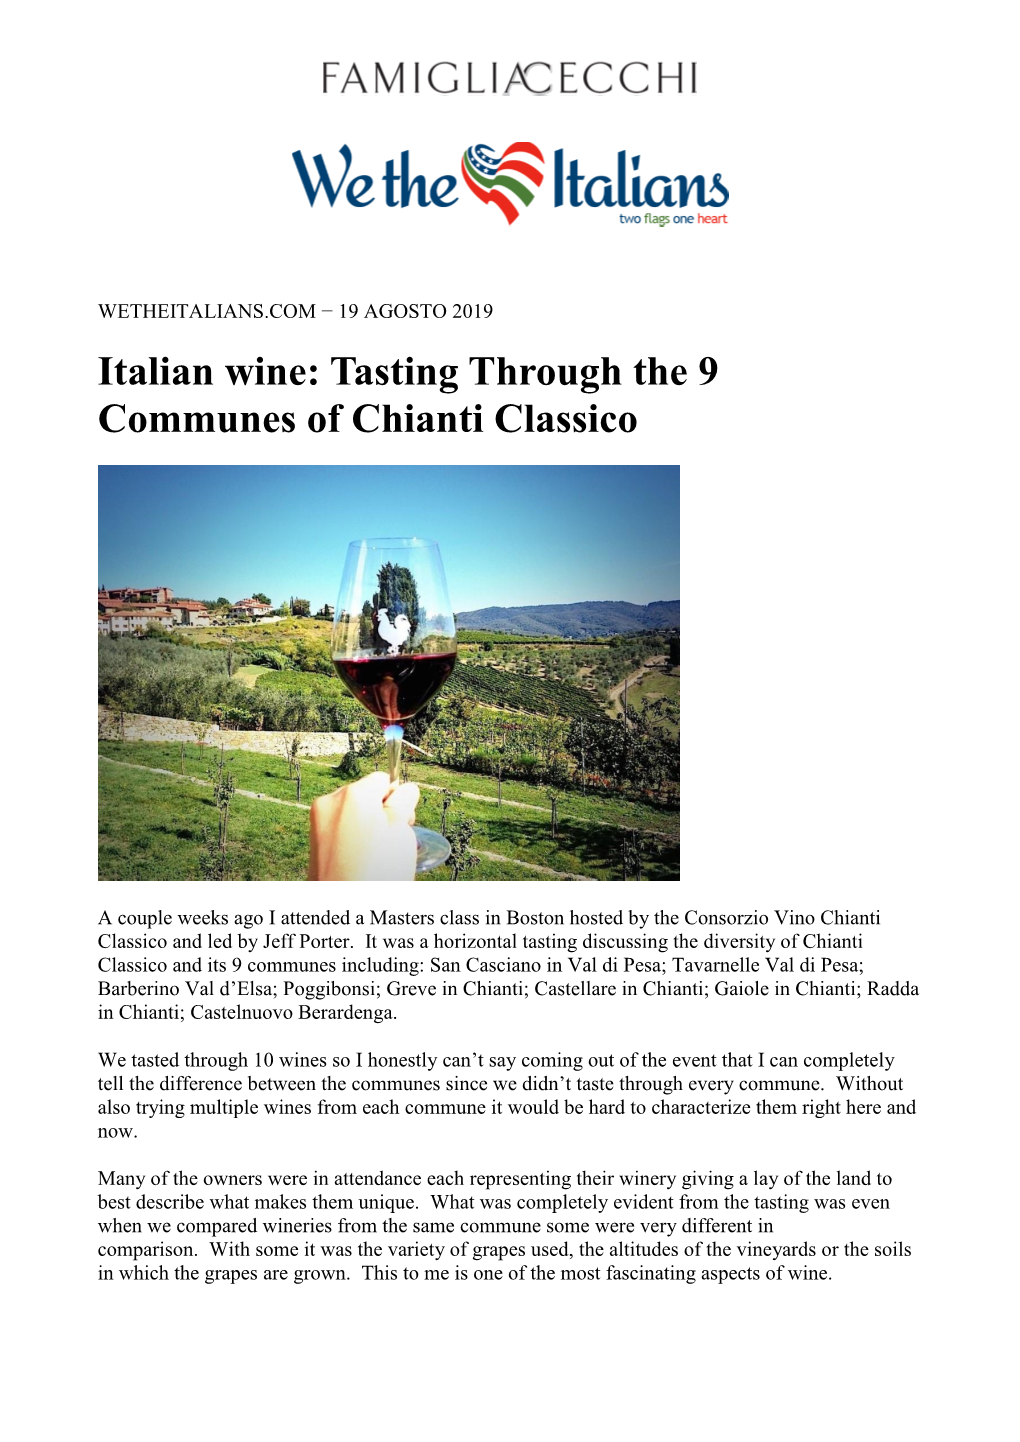 Italian Wine: Tasting Through the 9 Communes of Chianti Classico